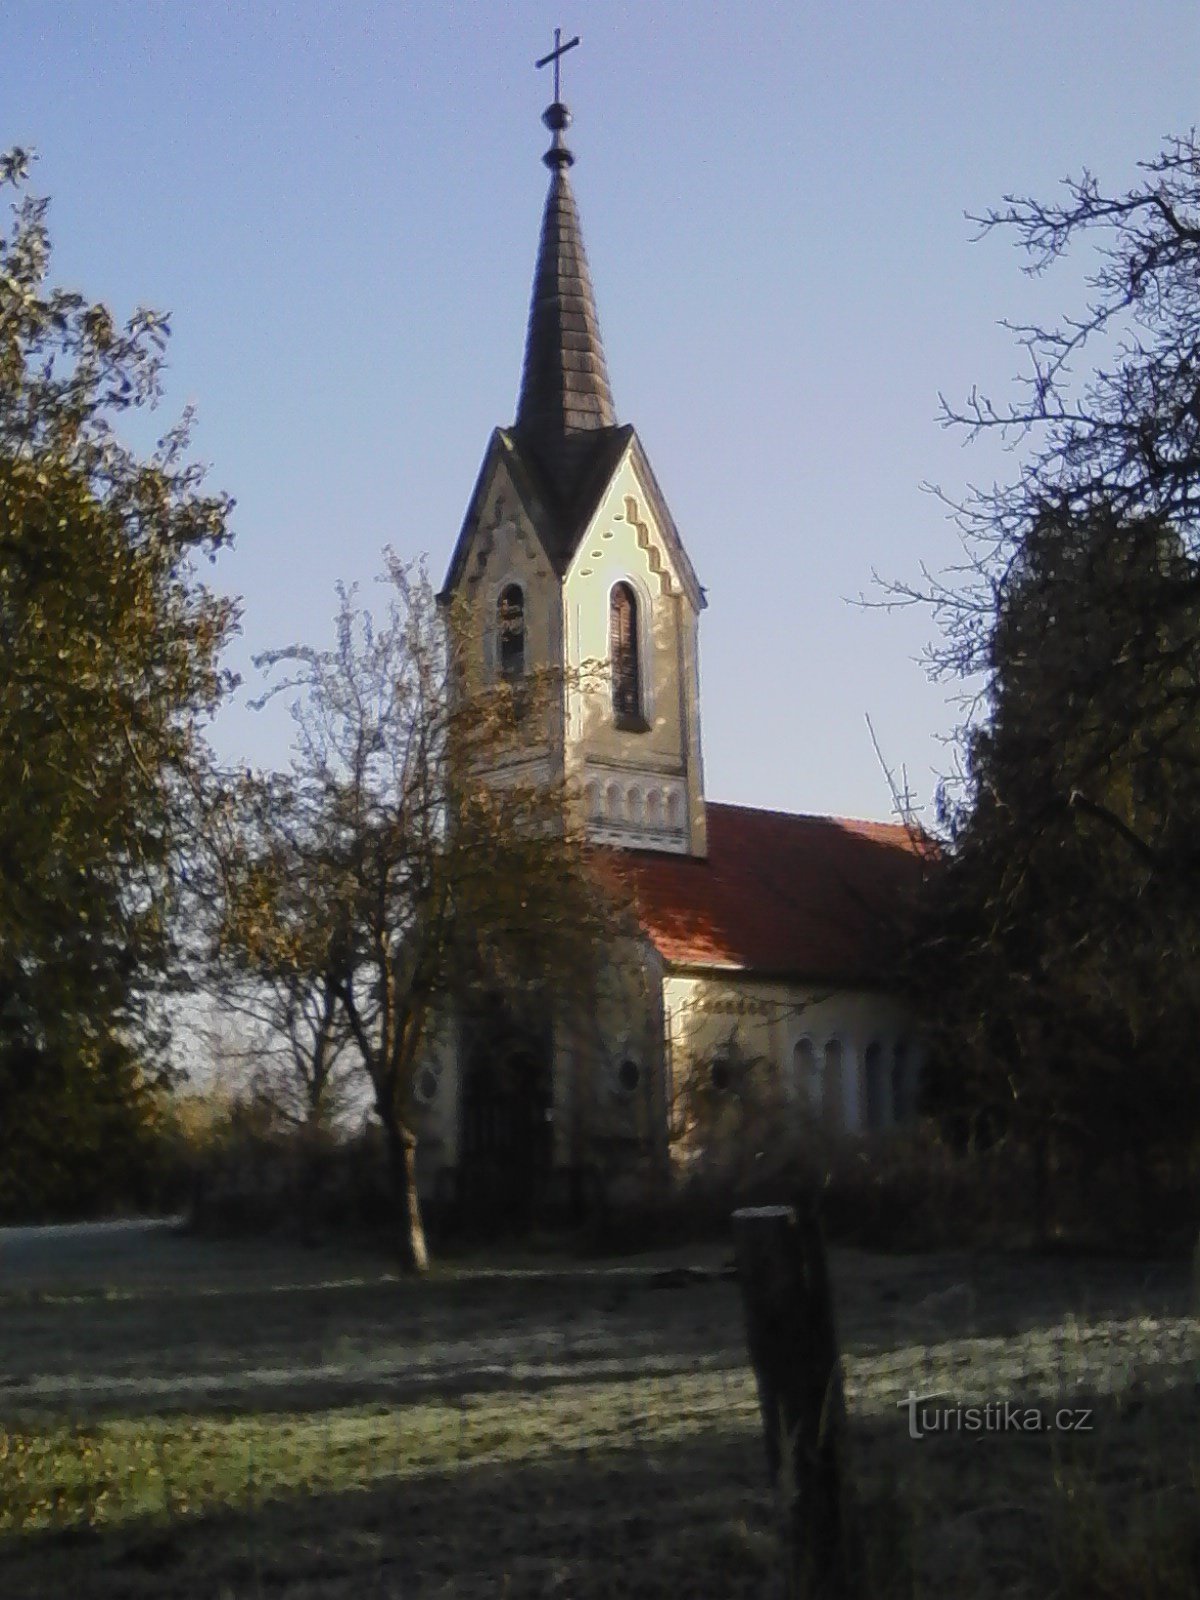 2. ジェトシホヴィツェ近くのセドミボレストナー P. マリア礼拝堂、1859 年。